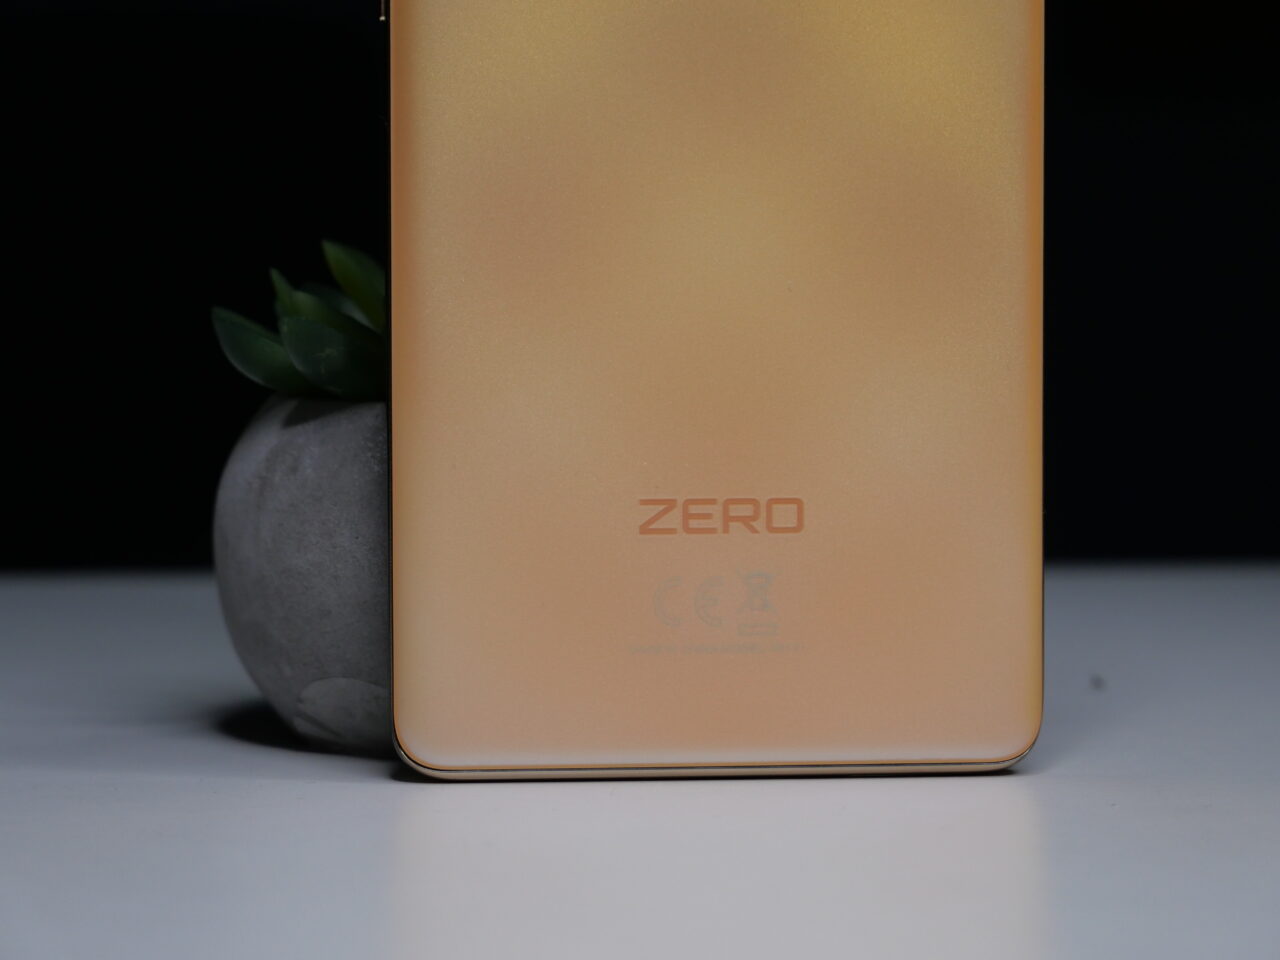 Tylna część złotego smartfona z napisem "ZERO" i symbolami certyfikatów, po lewej stronie doniczka z zielonym sukulenterm, na tle czarno-białej kompozycji.